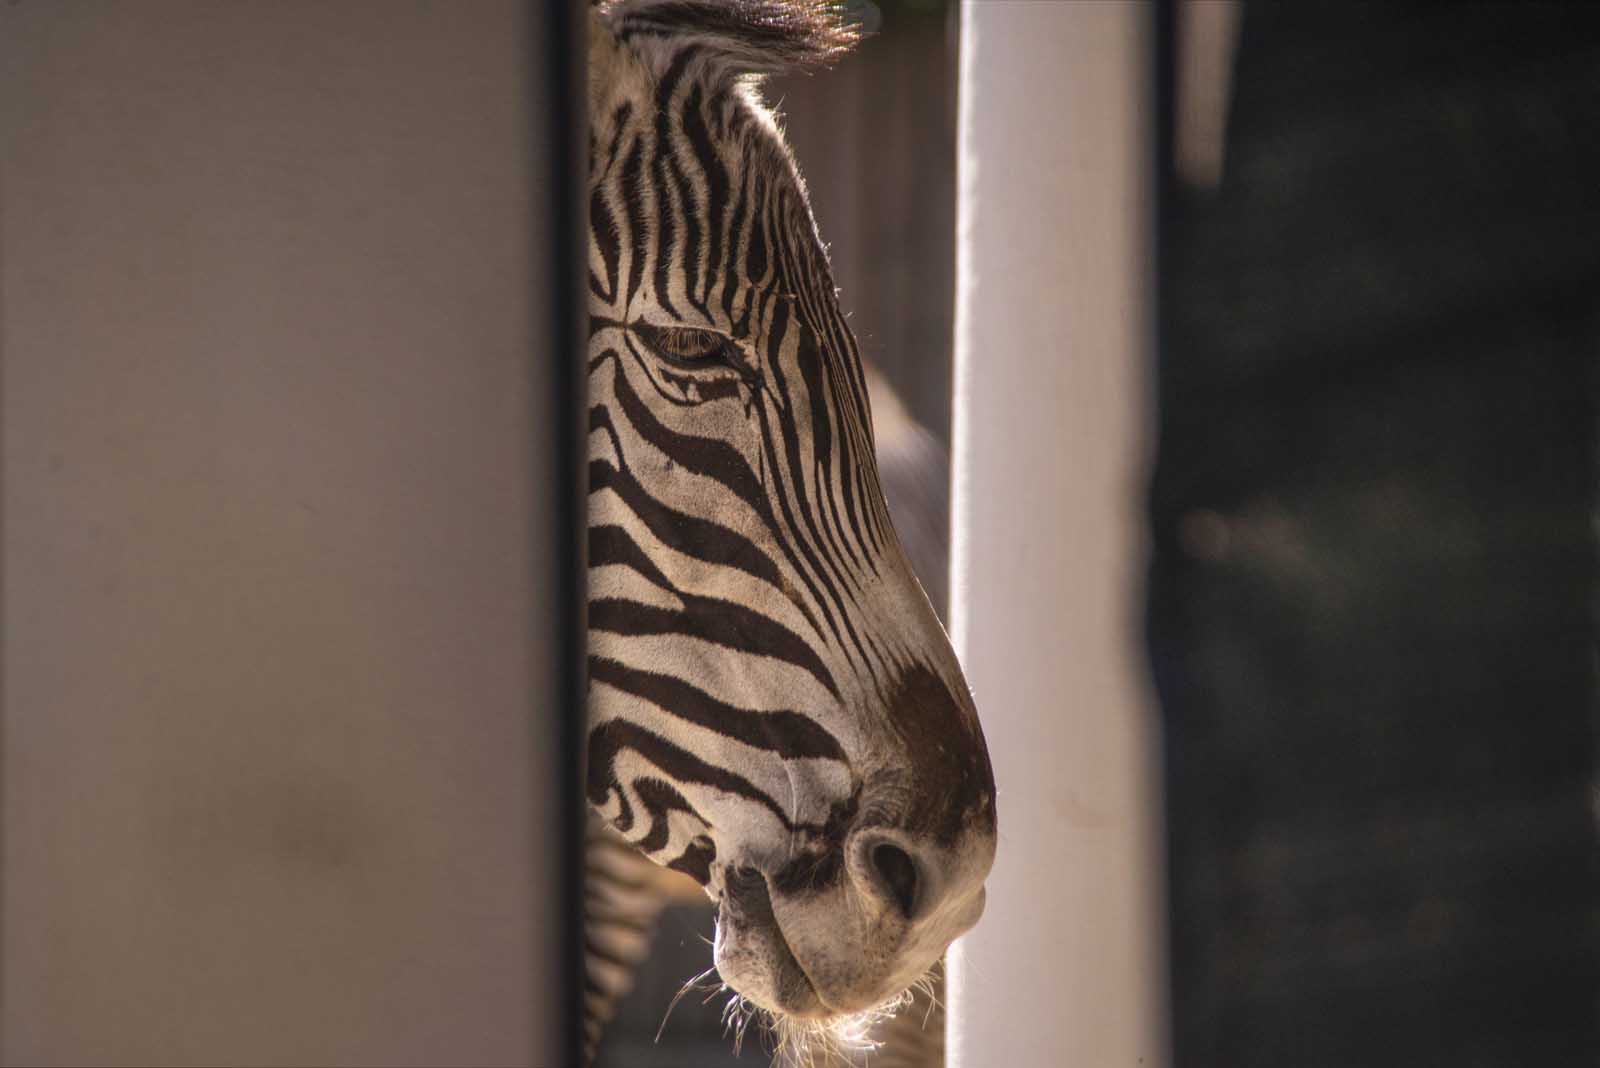 La Zebra di Grevy con un peso massimo di 450 kg, è la più grande fra le zebre e presenta una testa massiccia con orecchie arrotondate.